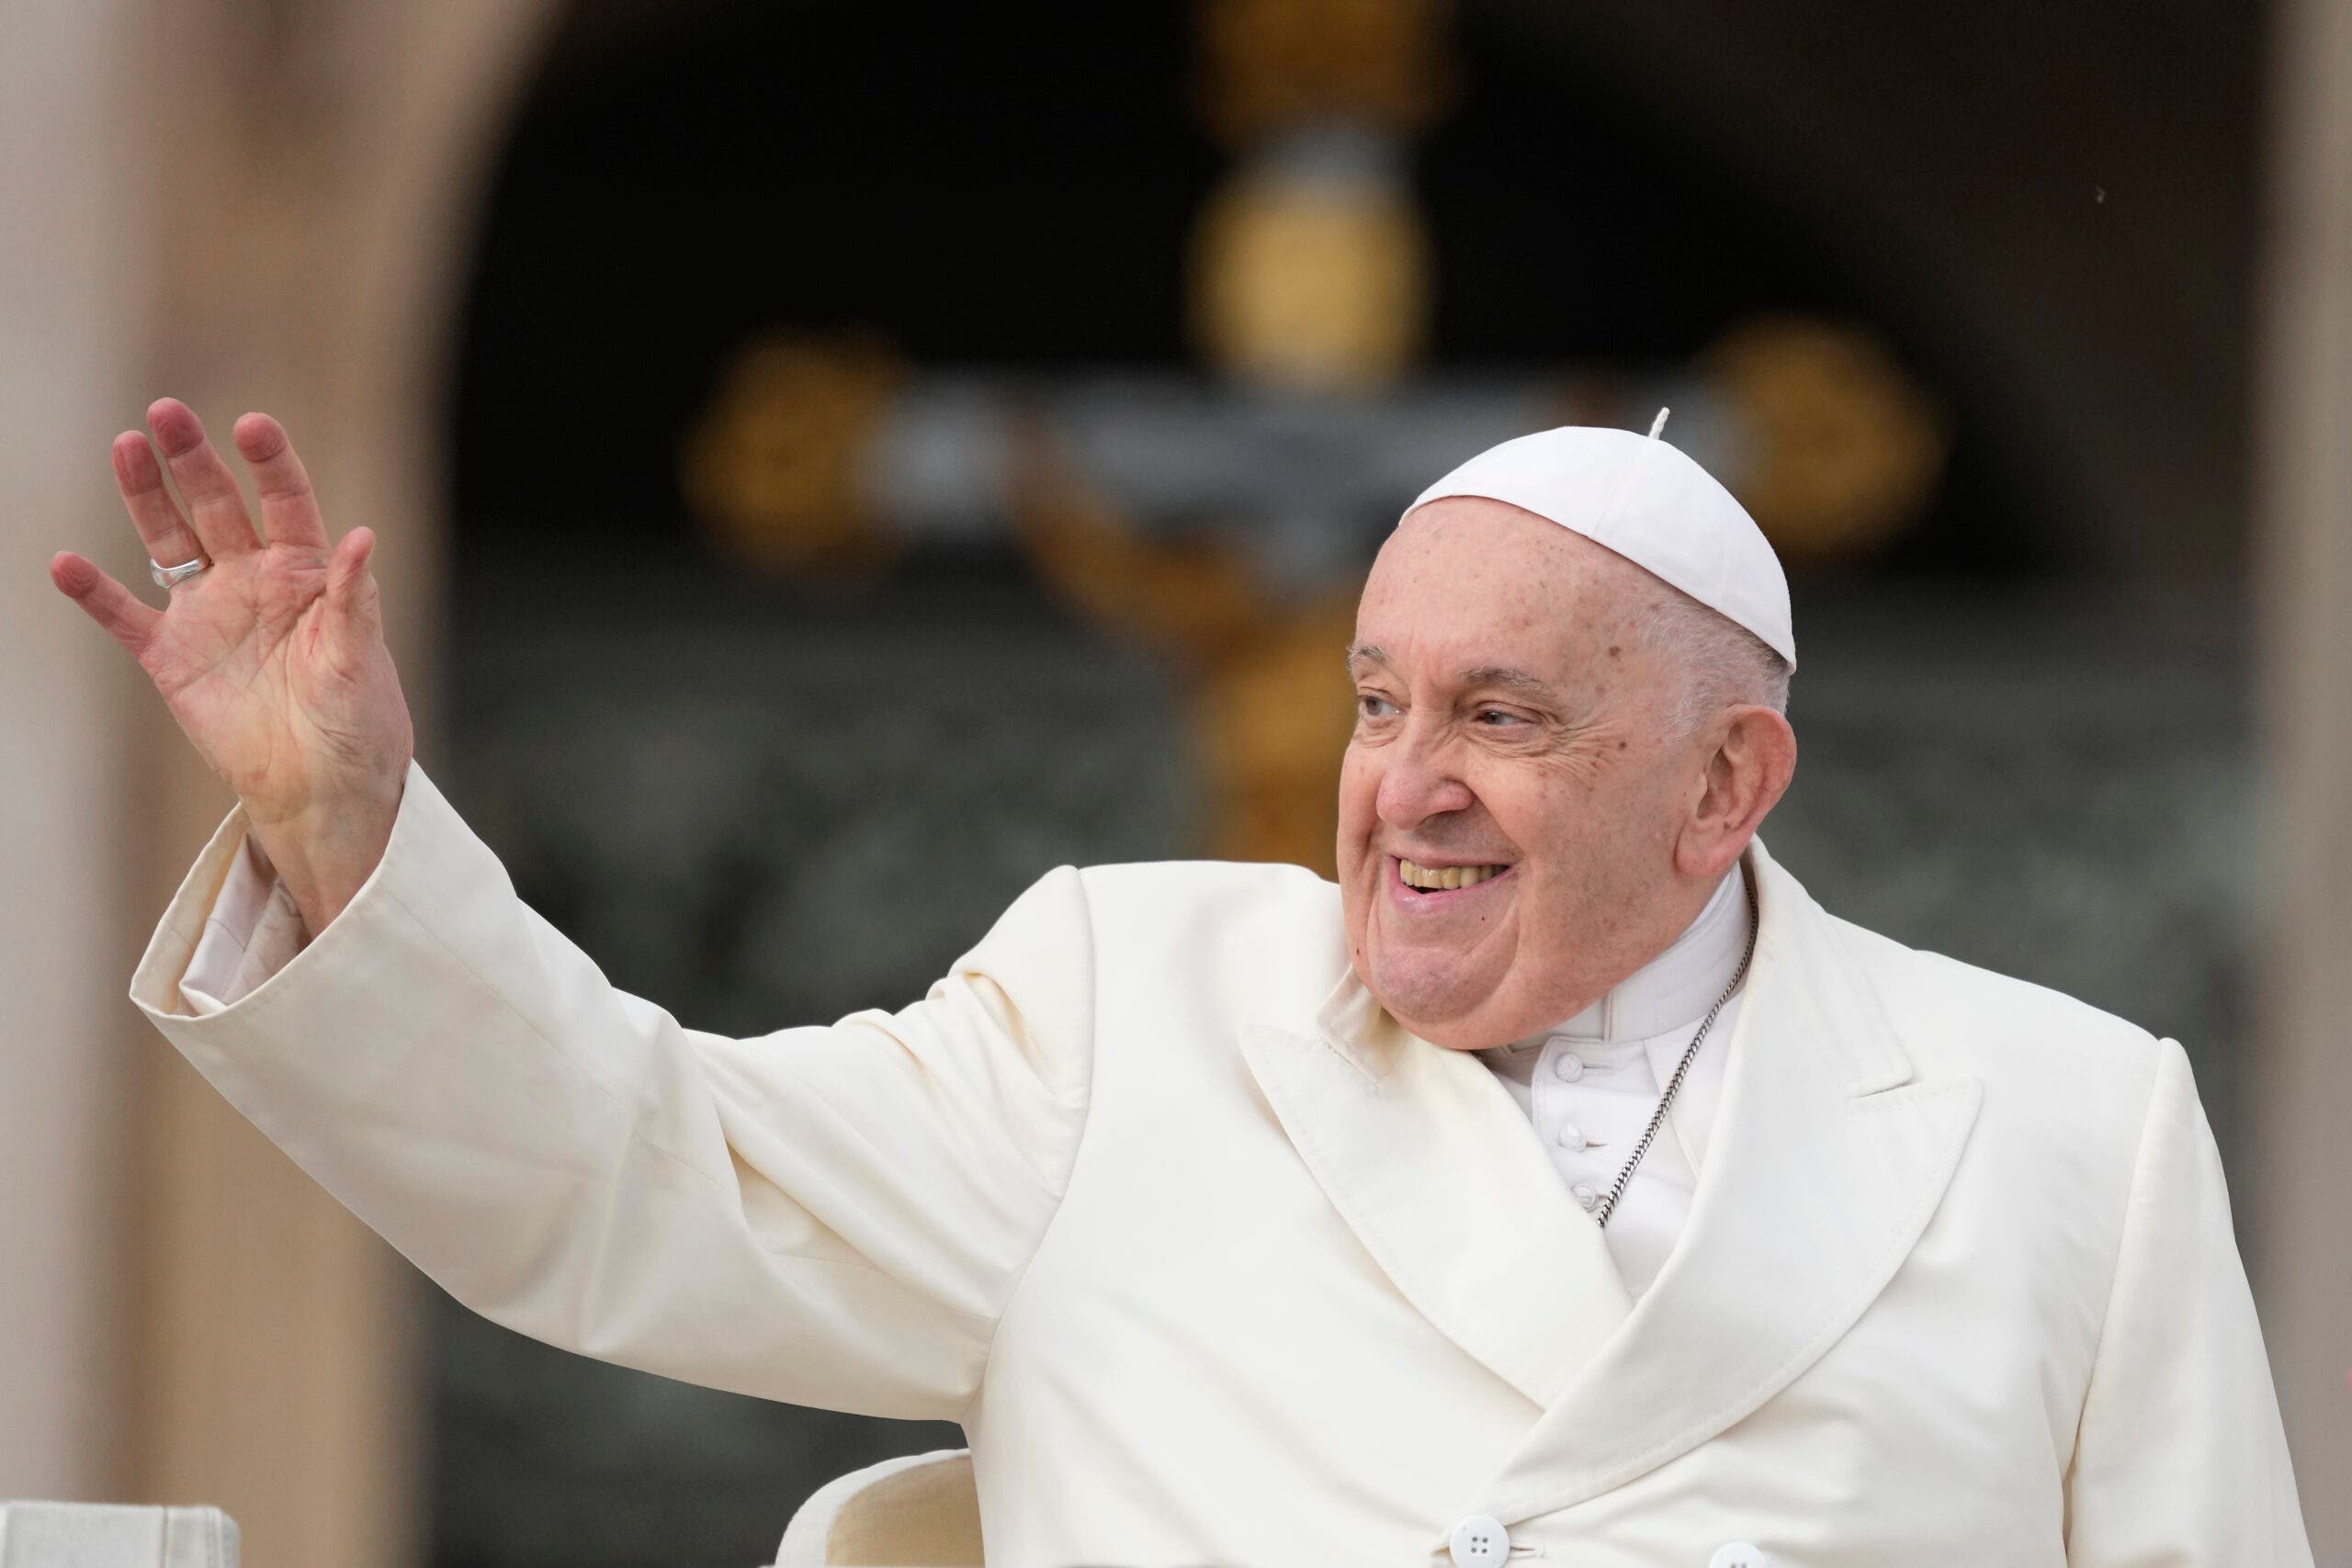 Vaticano: Francisco cancela audiencias matinales del sábado por una leve gripe